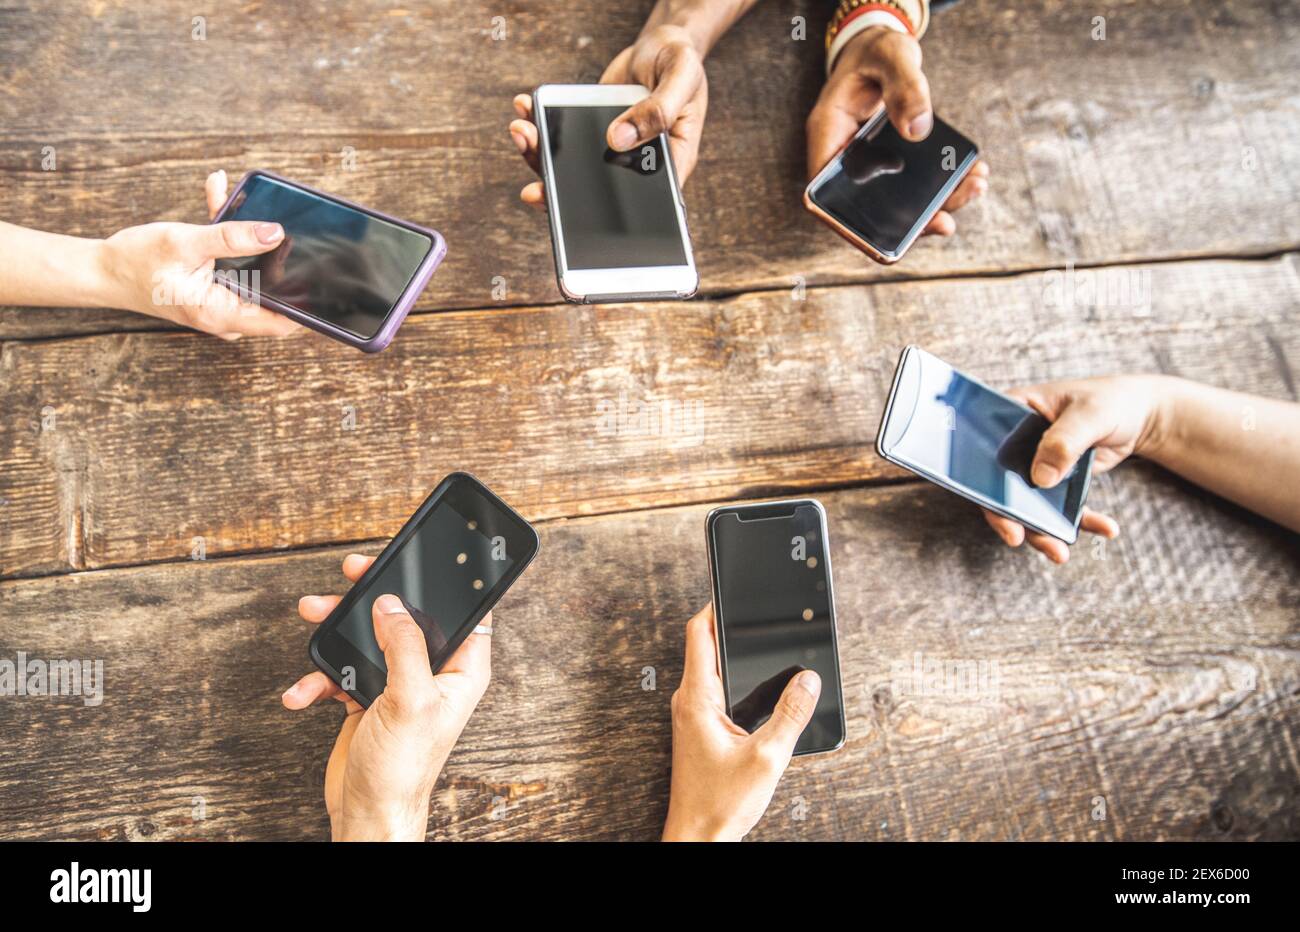 Mitarbeiter mit Handy auf Holzhintergrund - Nahaufnahme von Personen, die Inhalte in sozialen Medien teilen Mit Smartphone Stockfoto